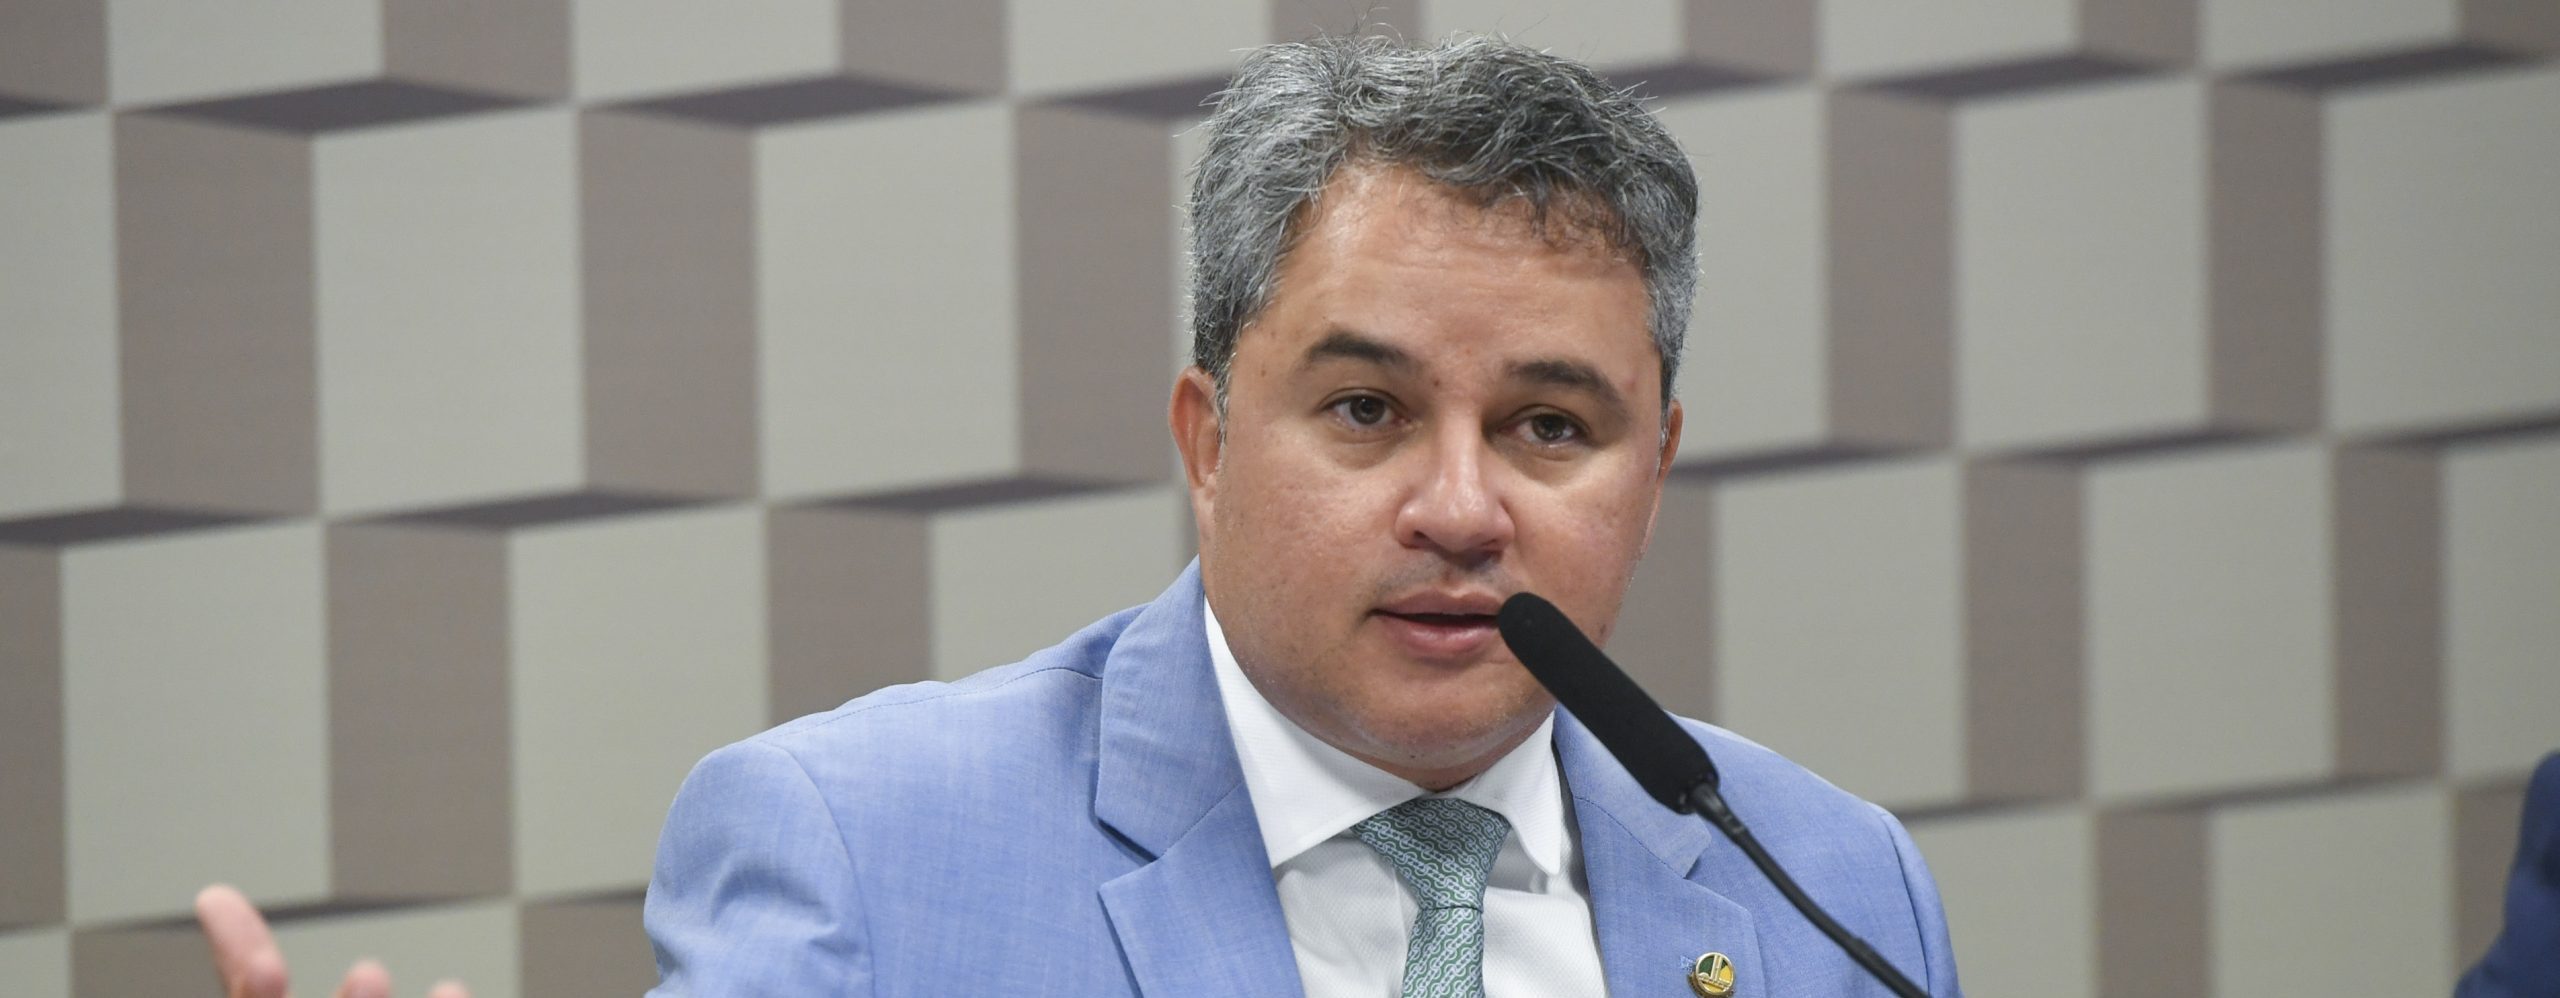 Senador Efraim Filho (UNIÃO-PB) (Foto: Jefferson Rudy/Agência Senado)